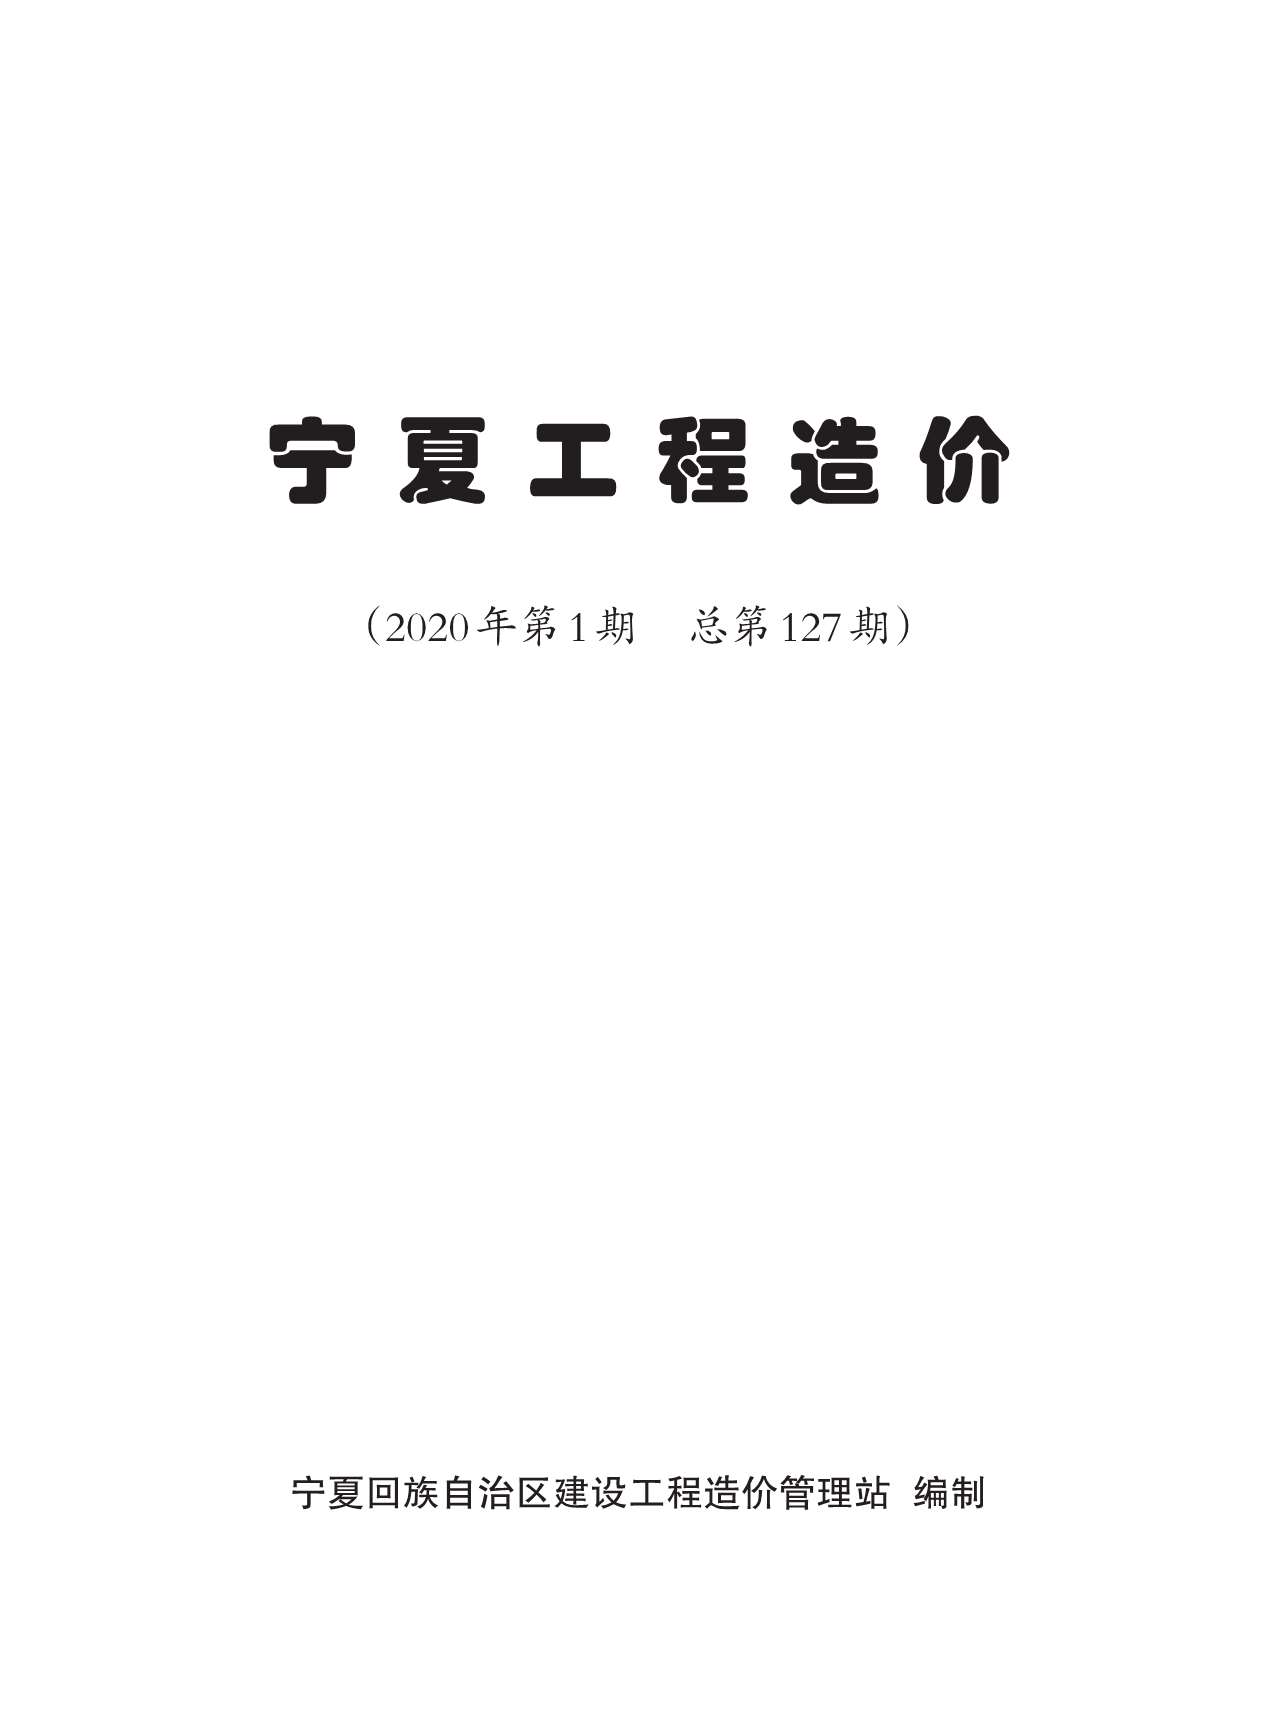 宁夏自治区2020年1月工程结算依据